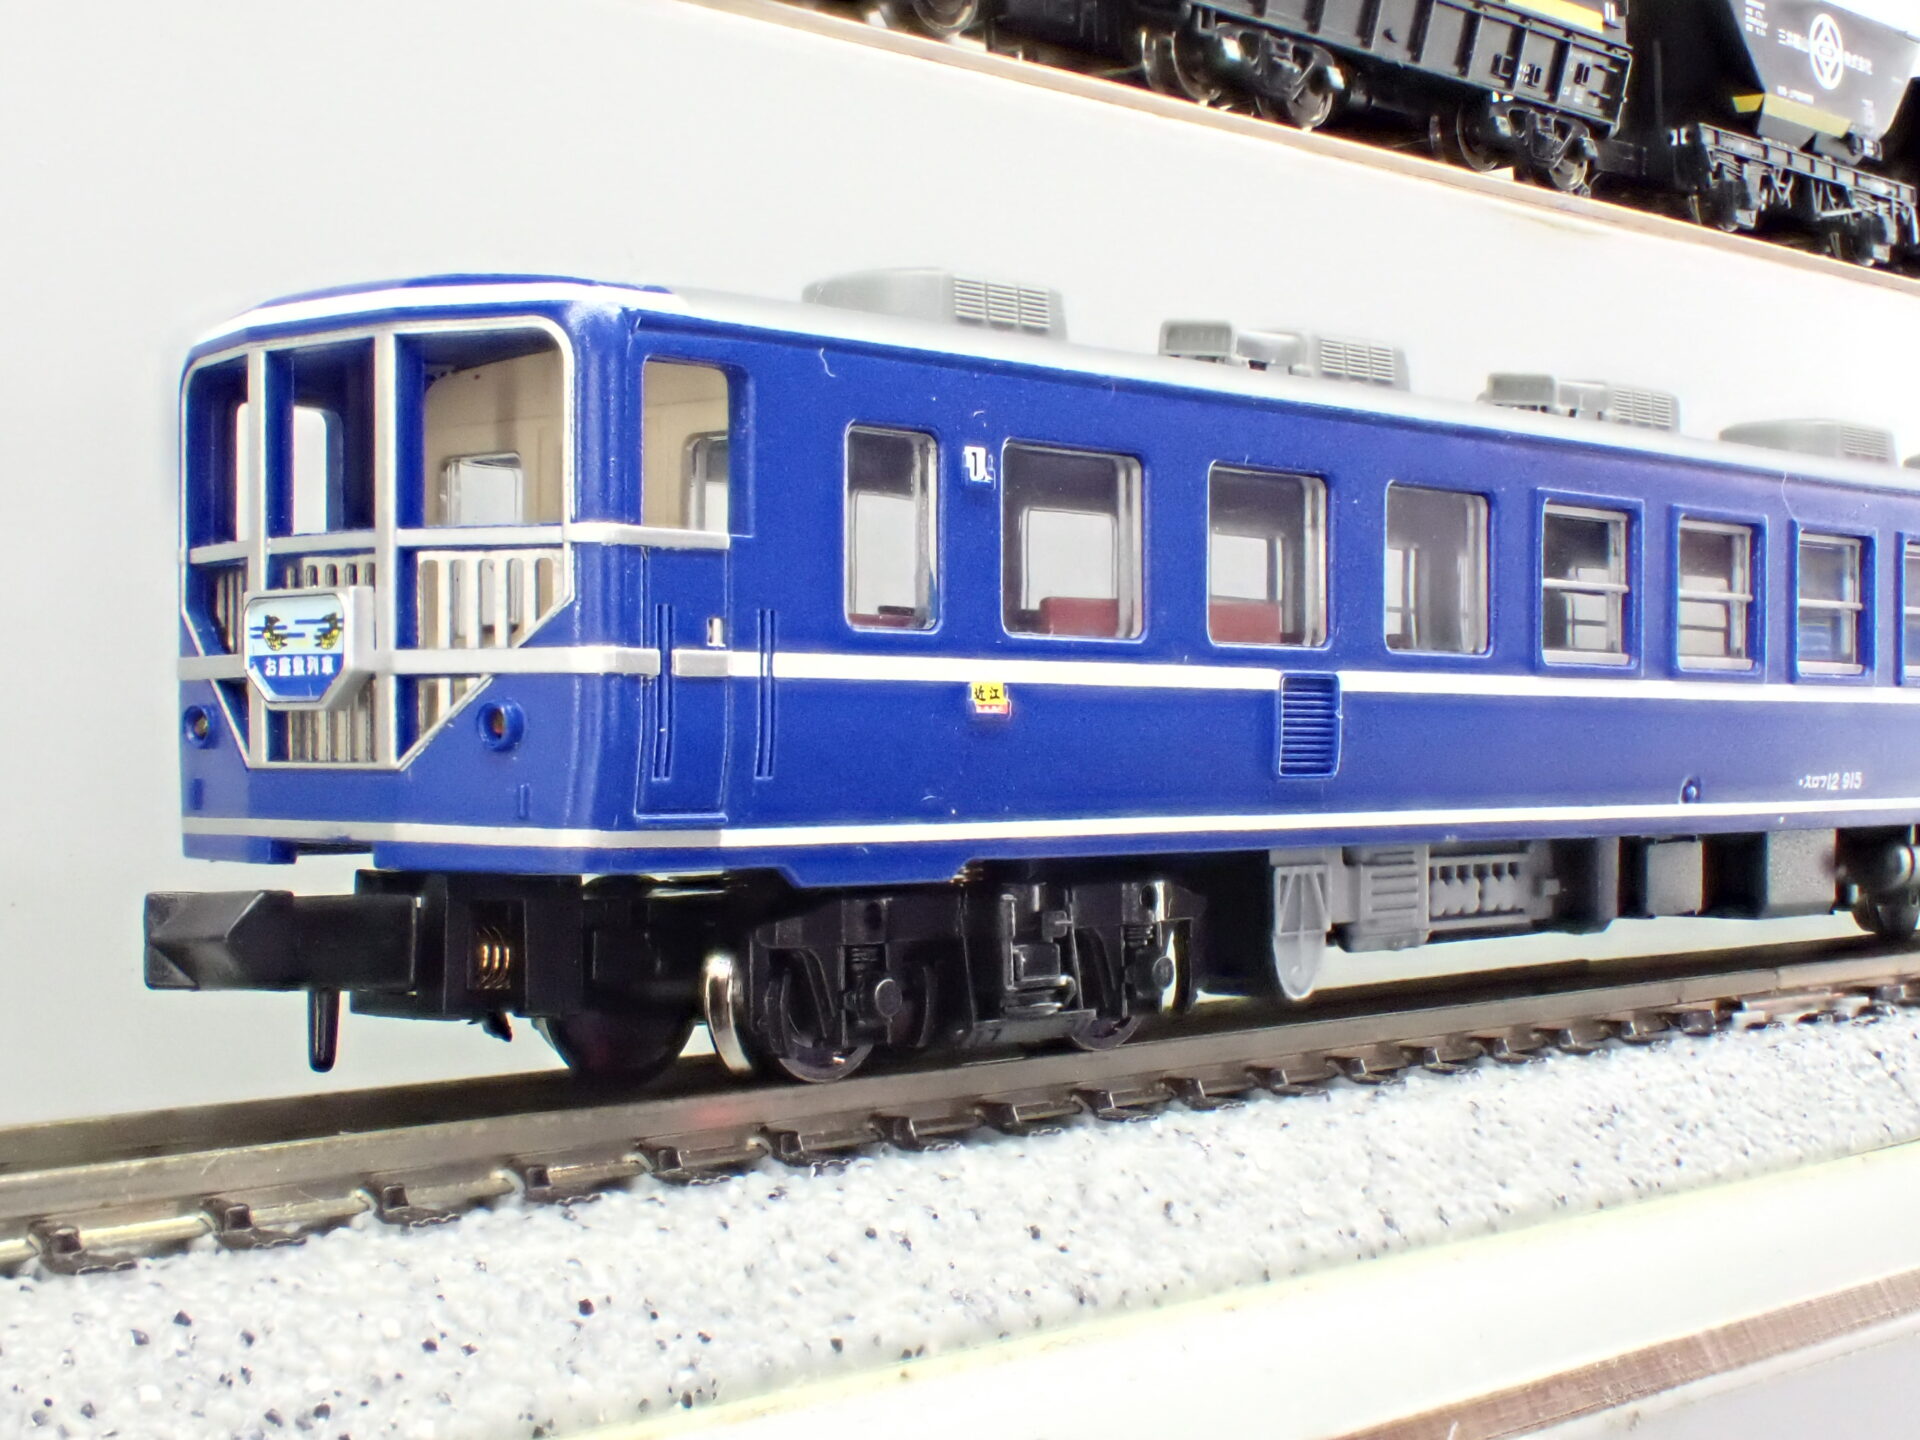 a-1125 12系 和式客車 「ナコ座」 6両セットb